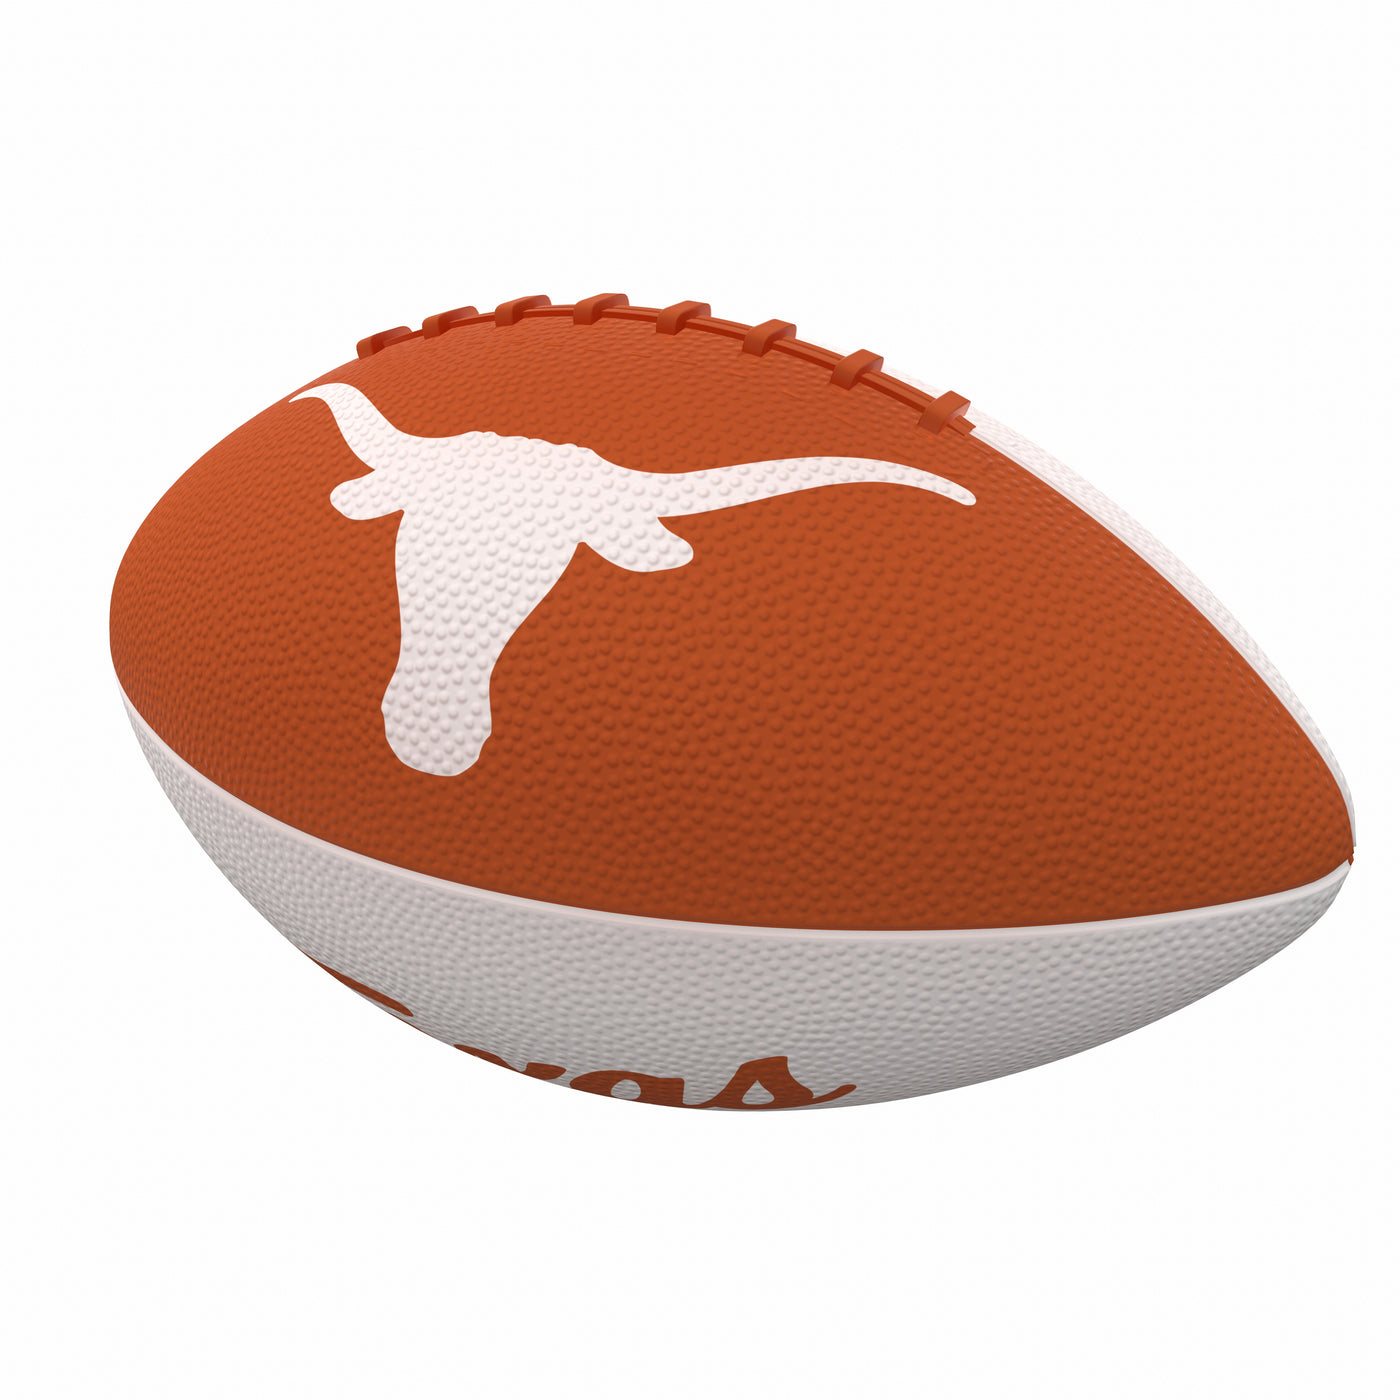 Texas Pinwheel Logo Junior Size Rubber Football